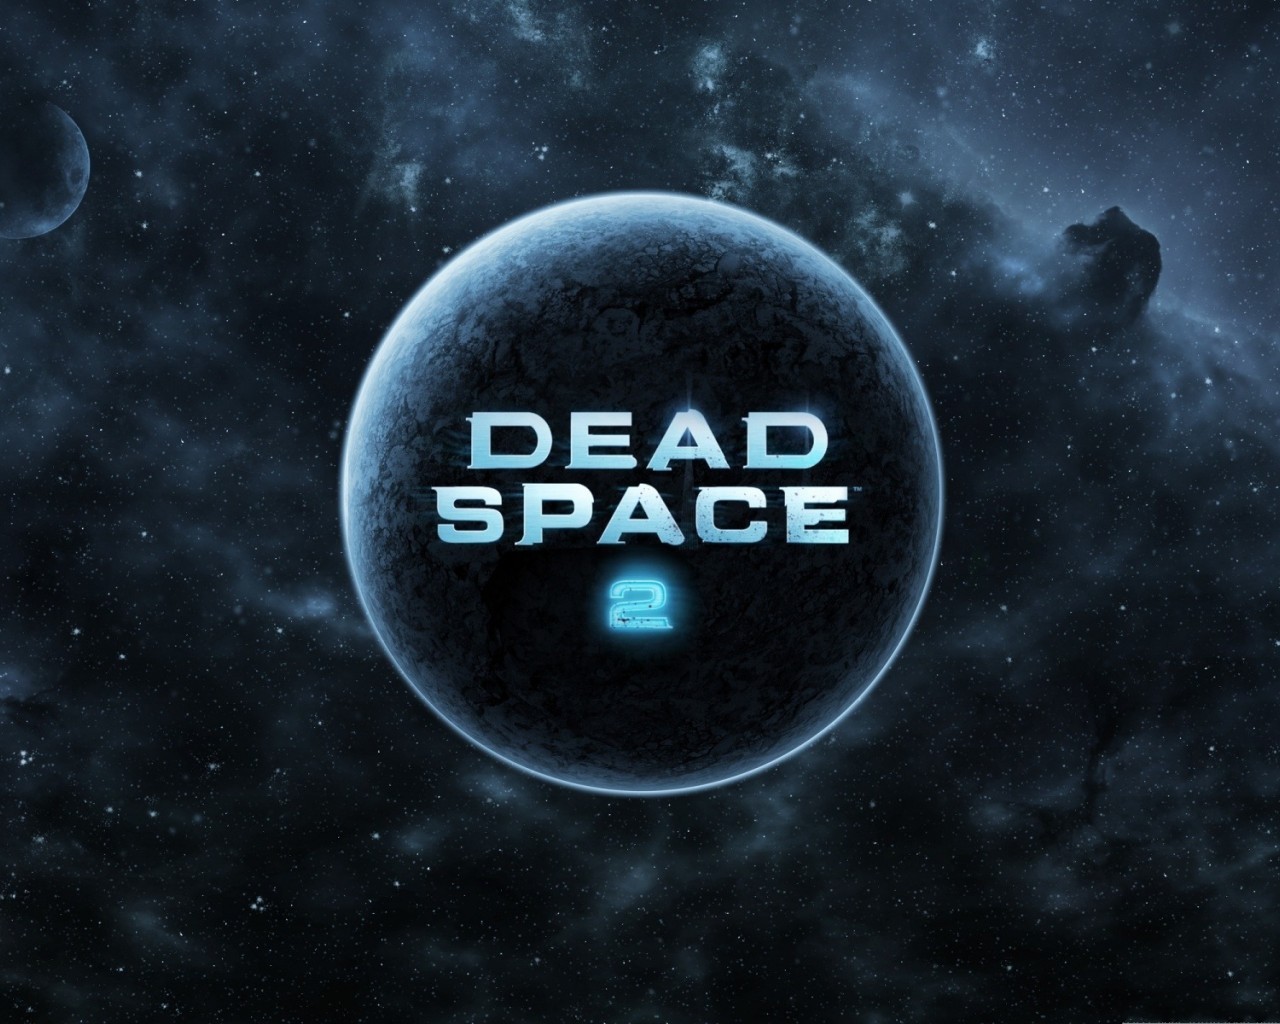 Скачать картинку Мертвый Космос (Dead Space), Игры в телефон бесплатно.